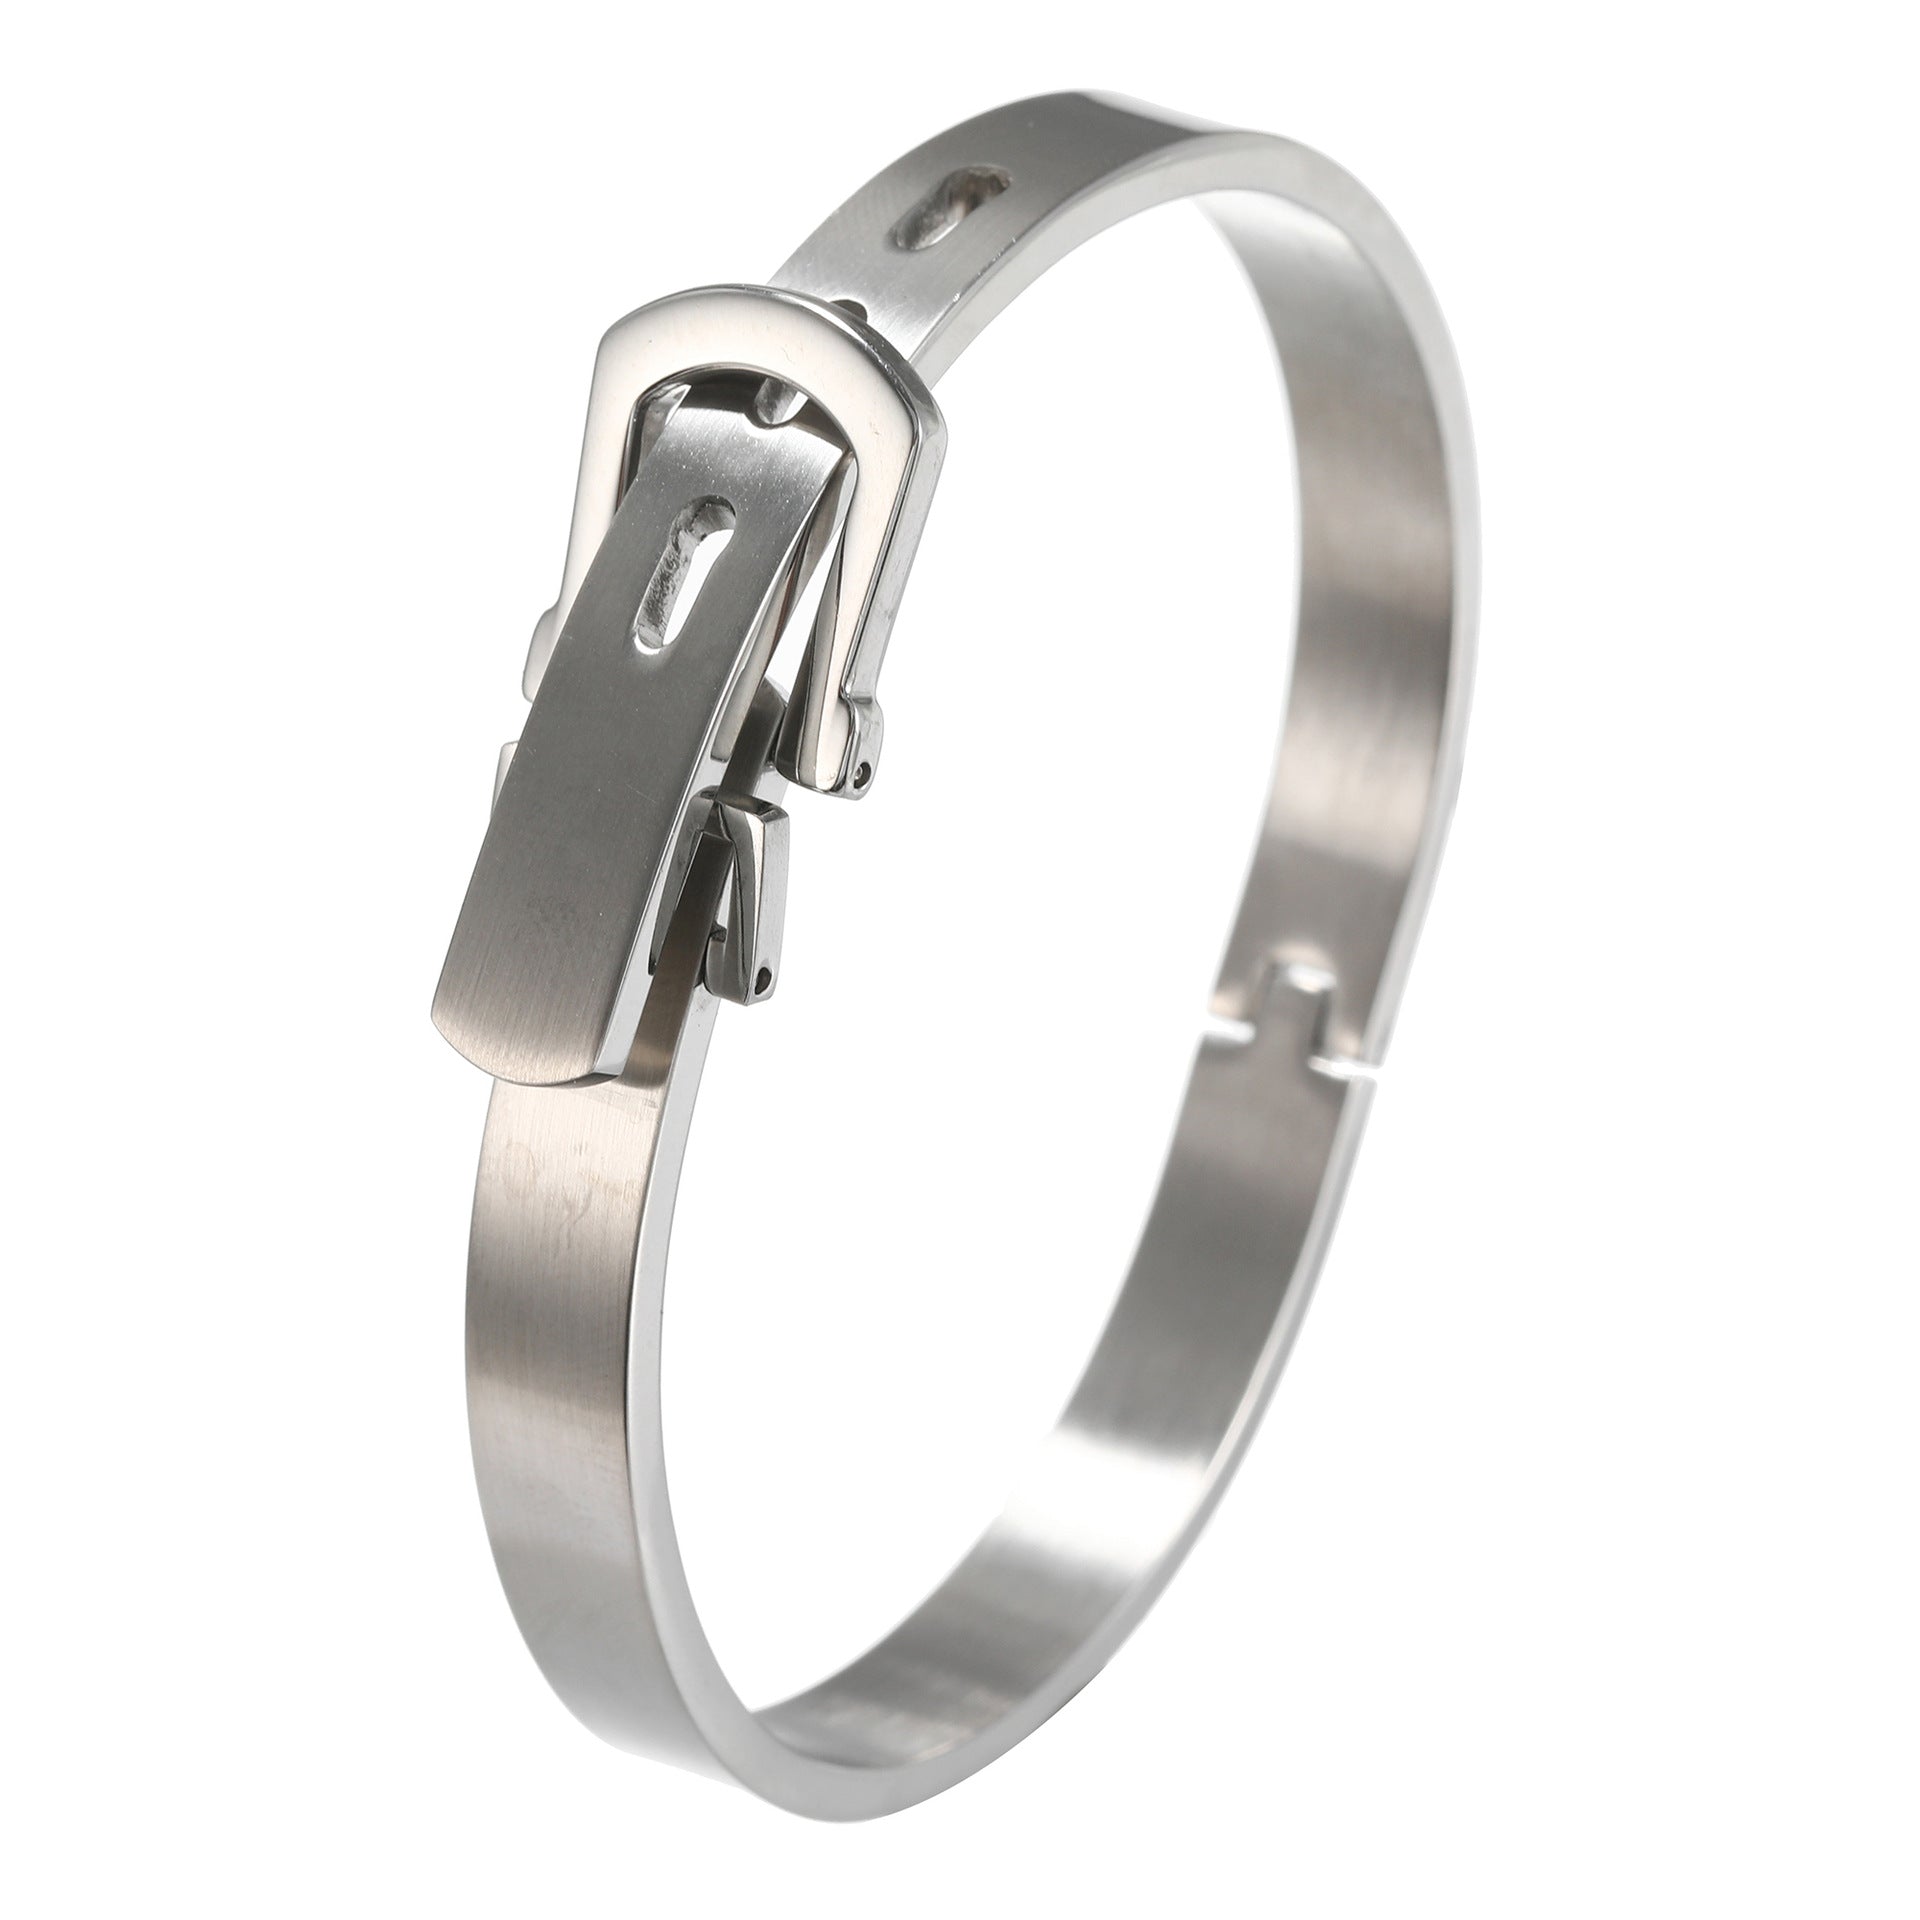 5pcs/lot Fashion Stainless Steel Bangle for Men & Women Silver Women & Men Bracelets Charms Beads Beyond